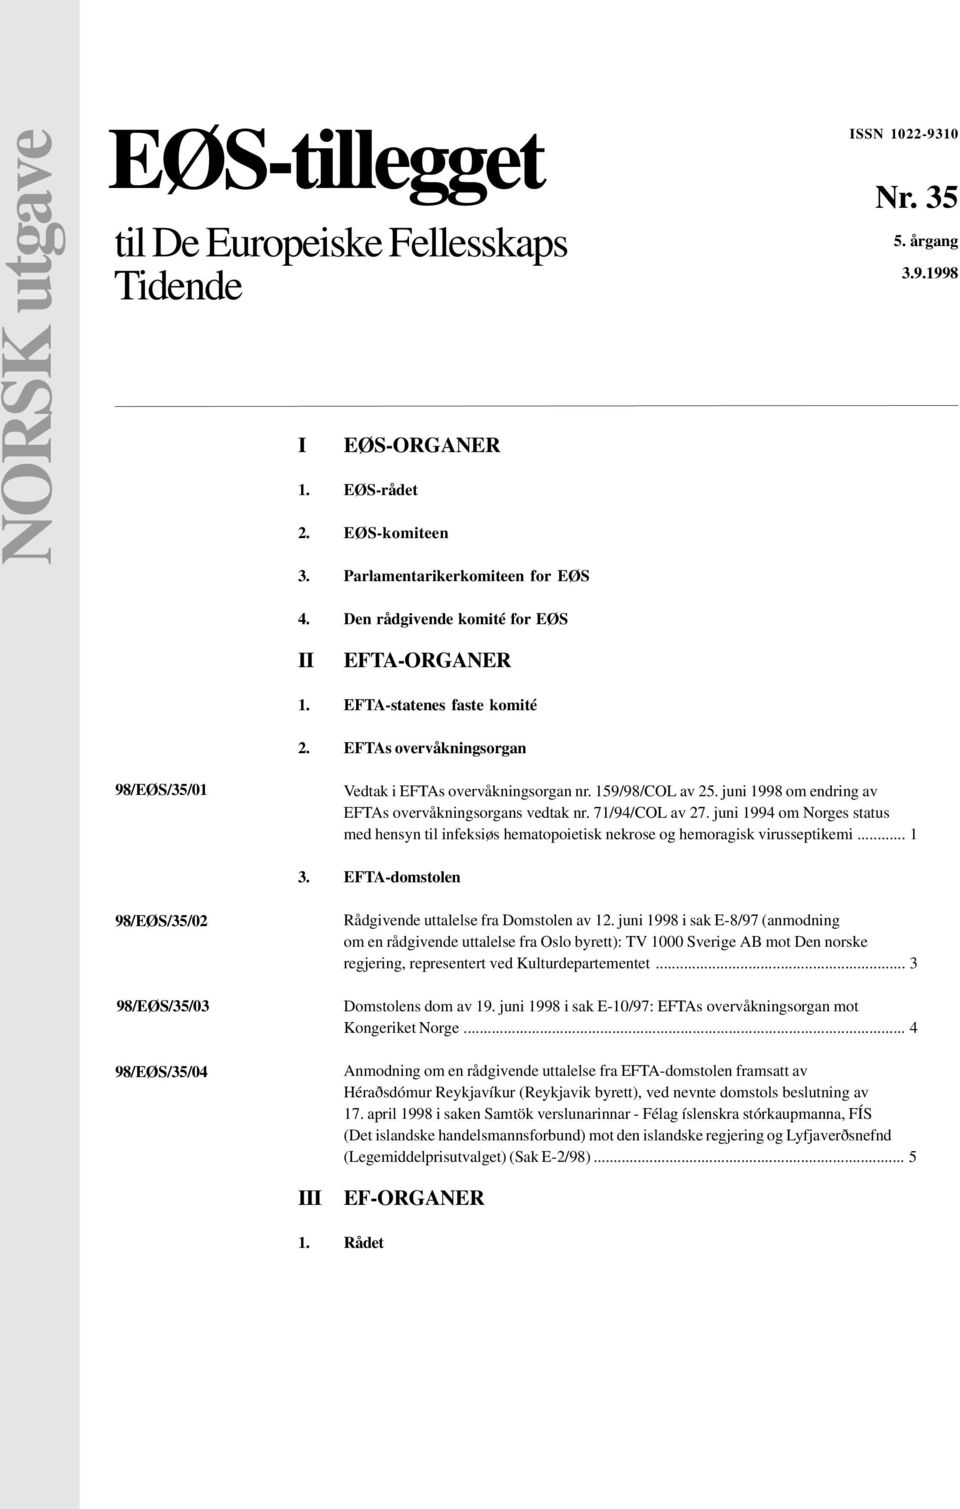 juni 1998 om endring av EFTAs overvåkningsorgans vedtak nr. 71/94/COL av 27. juni 1994 om Norges status med hensyn til infeksiøs hematopoietisk nekrose og hemoragisk virusseptikemi... 1 3.